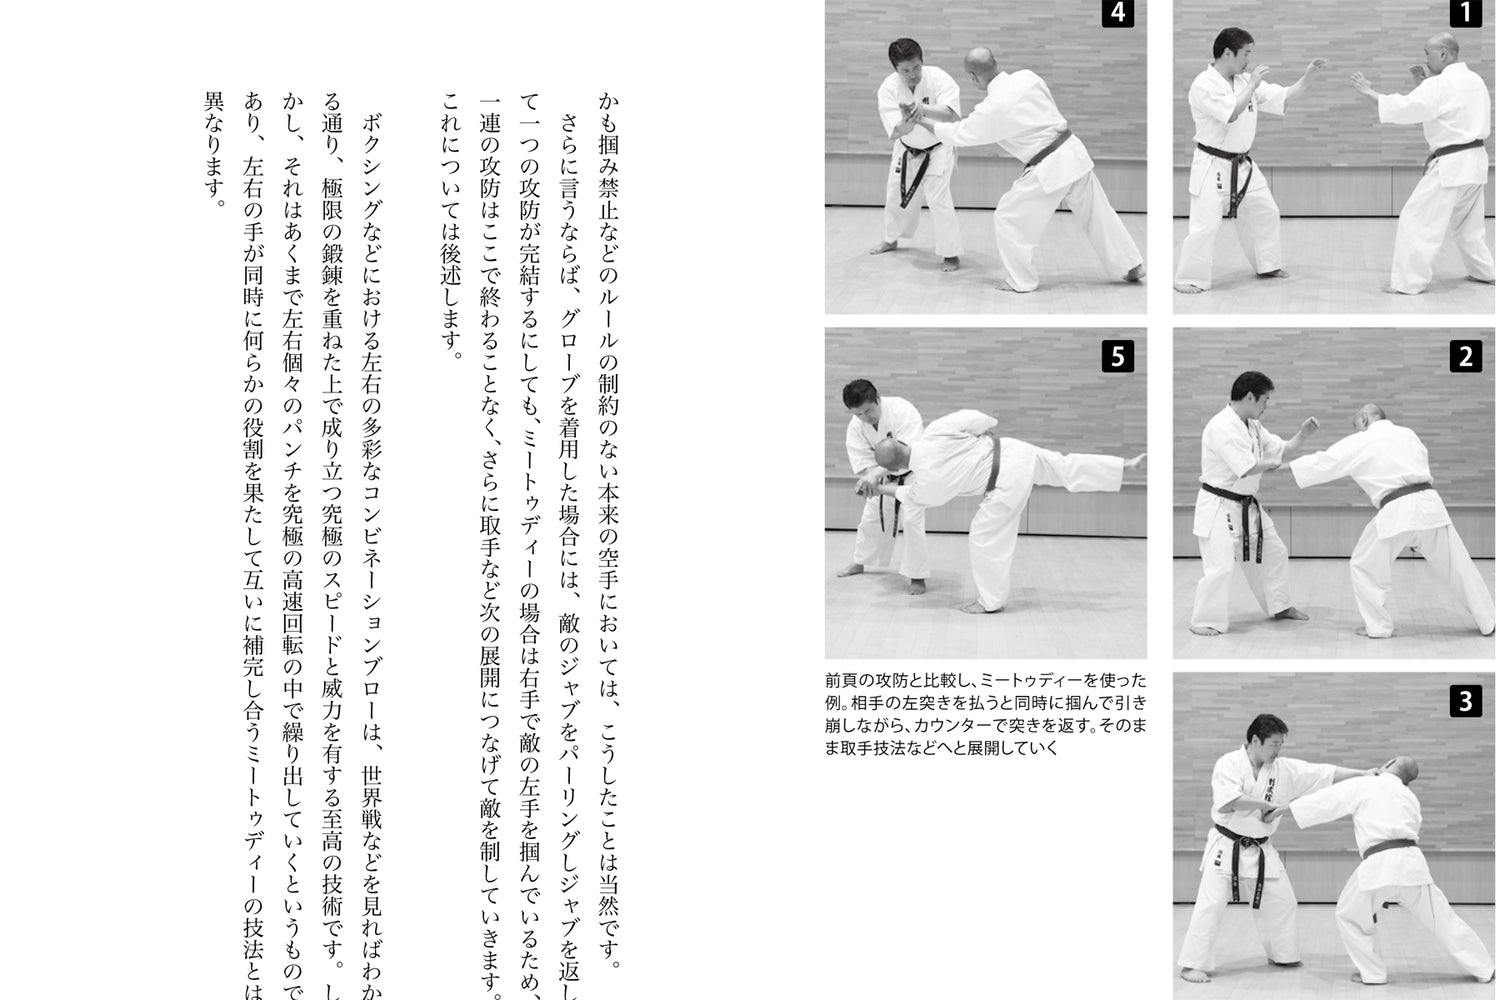 Libro Meotodo del Karate de Tetsuji Sato